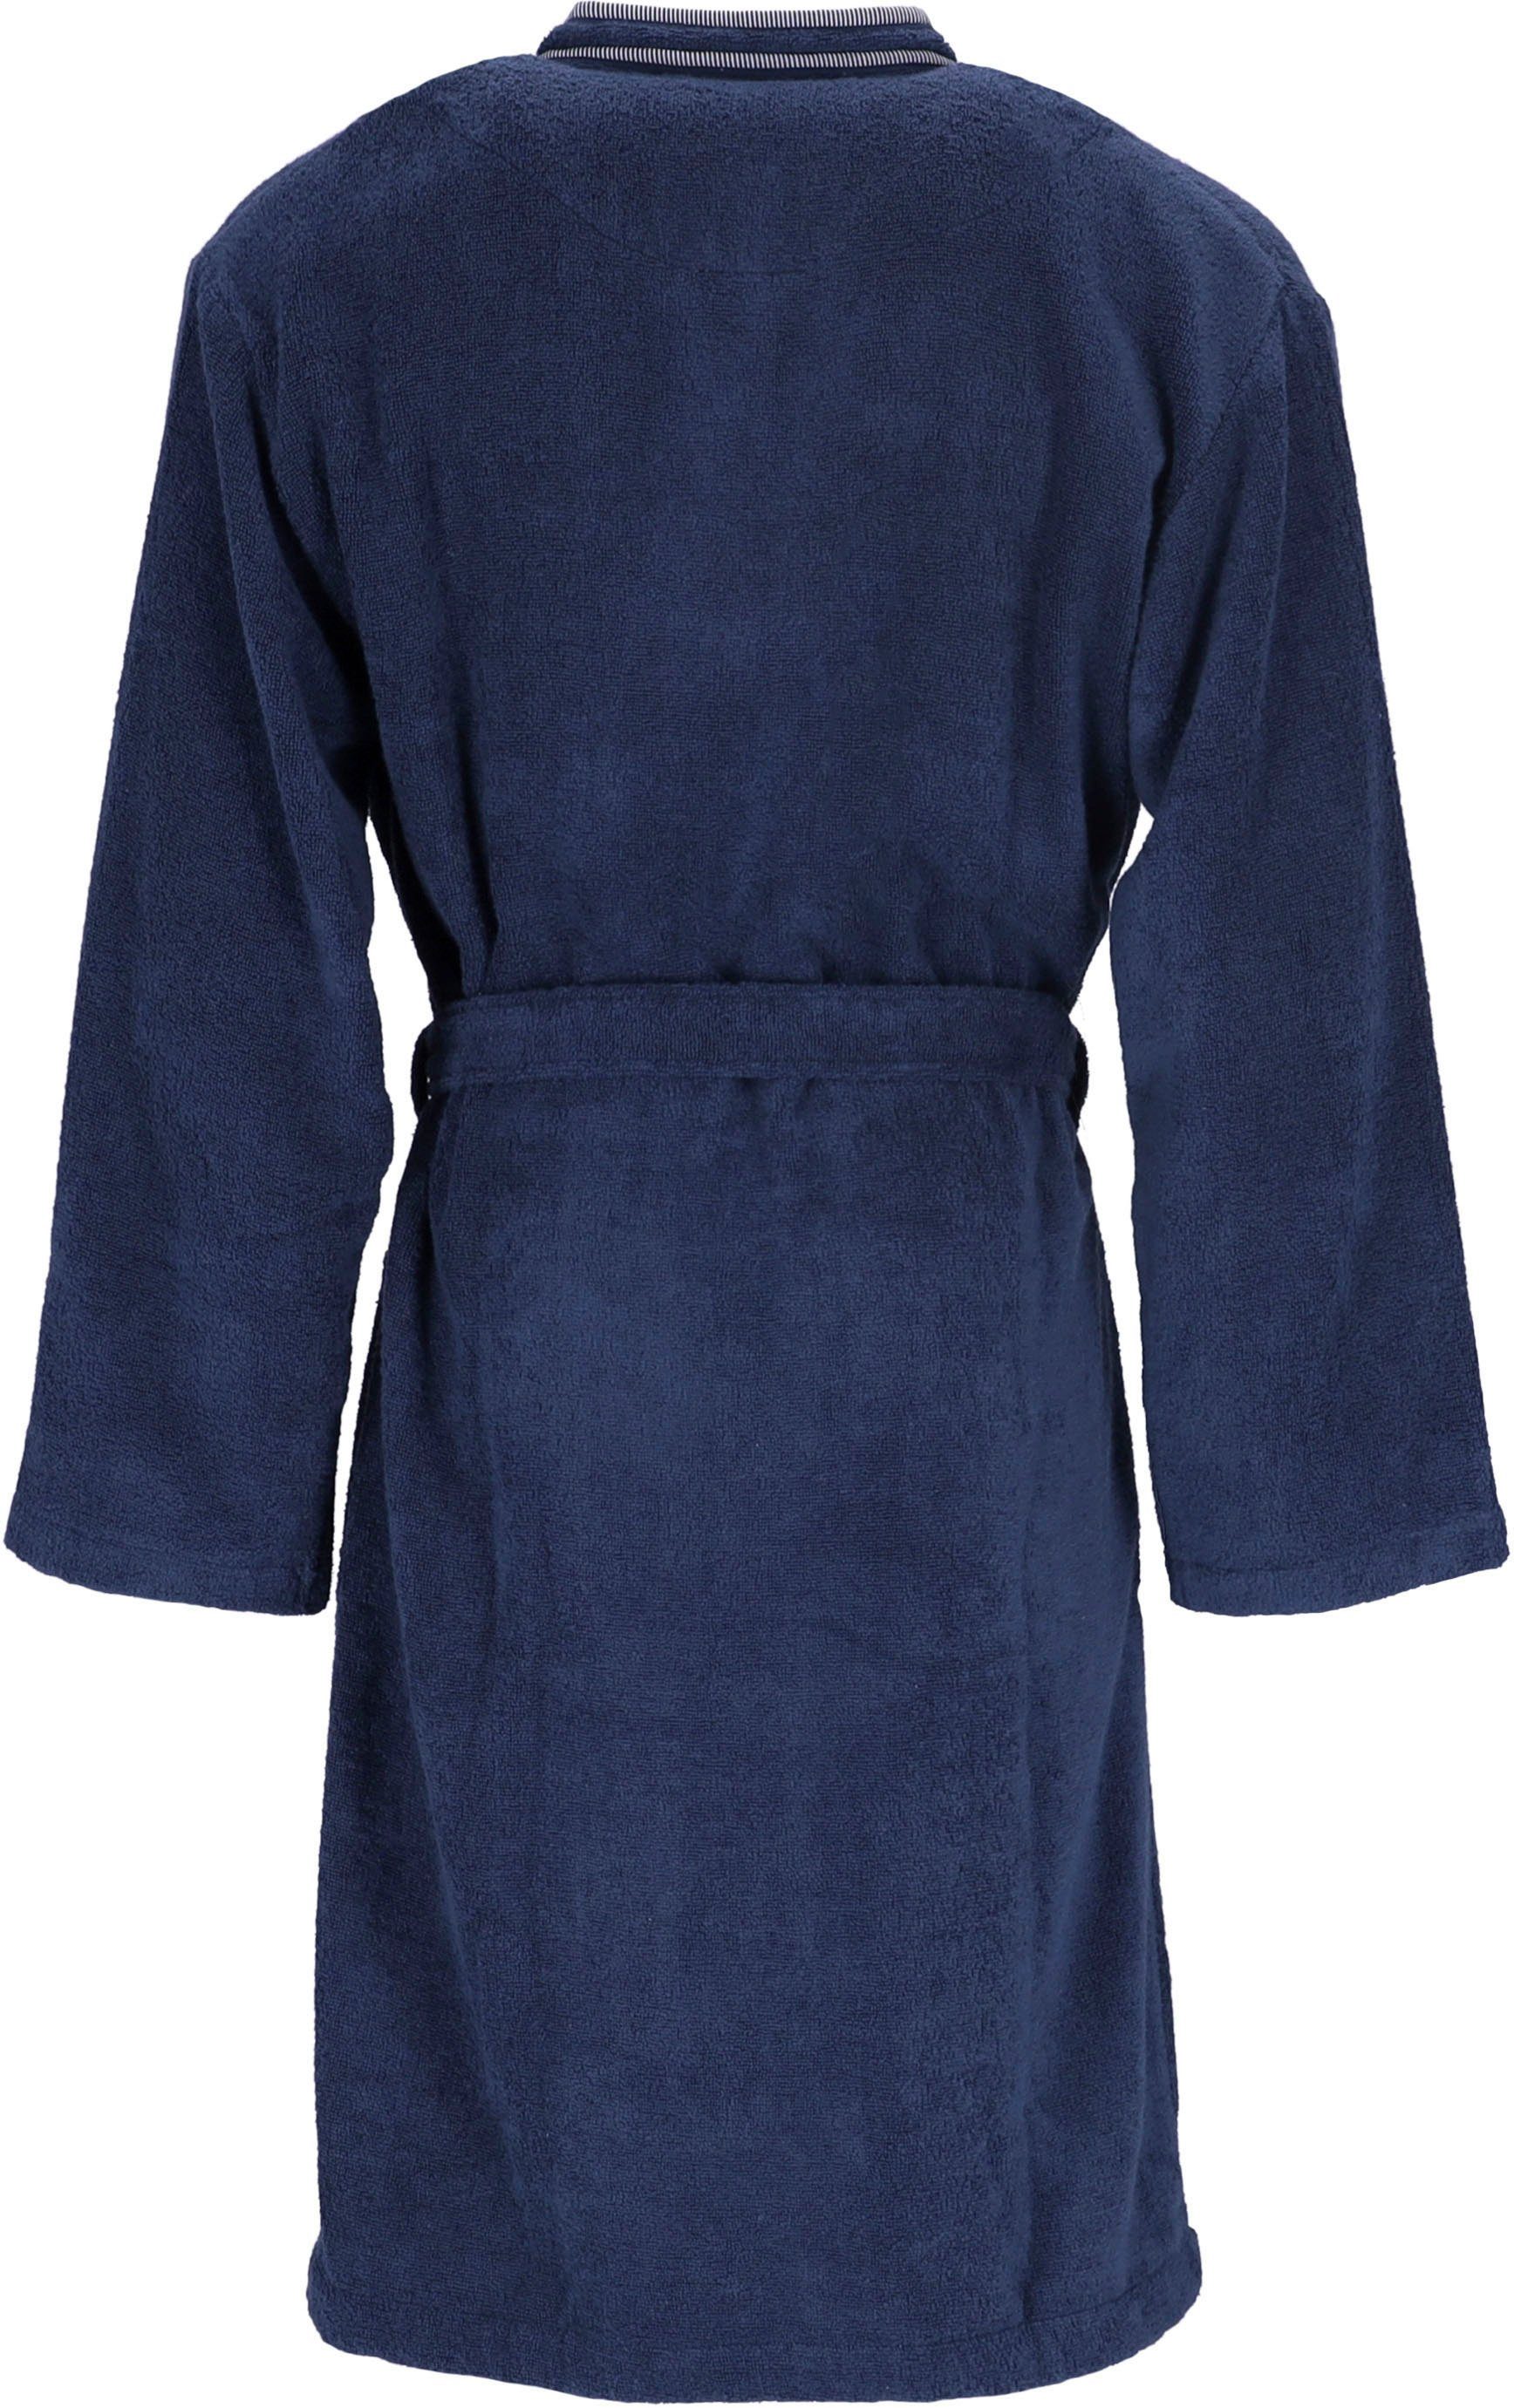 Vossen Herrenbademantel Jack, Kimono-Kragen, blau marine Langform, Gürtel Baumwolle